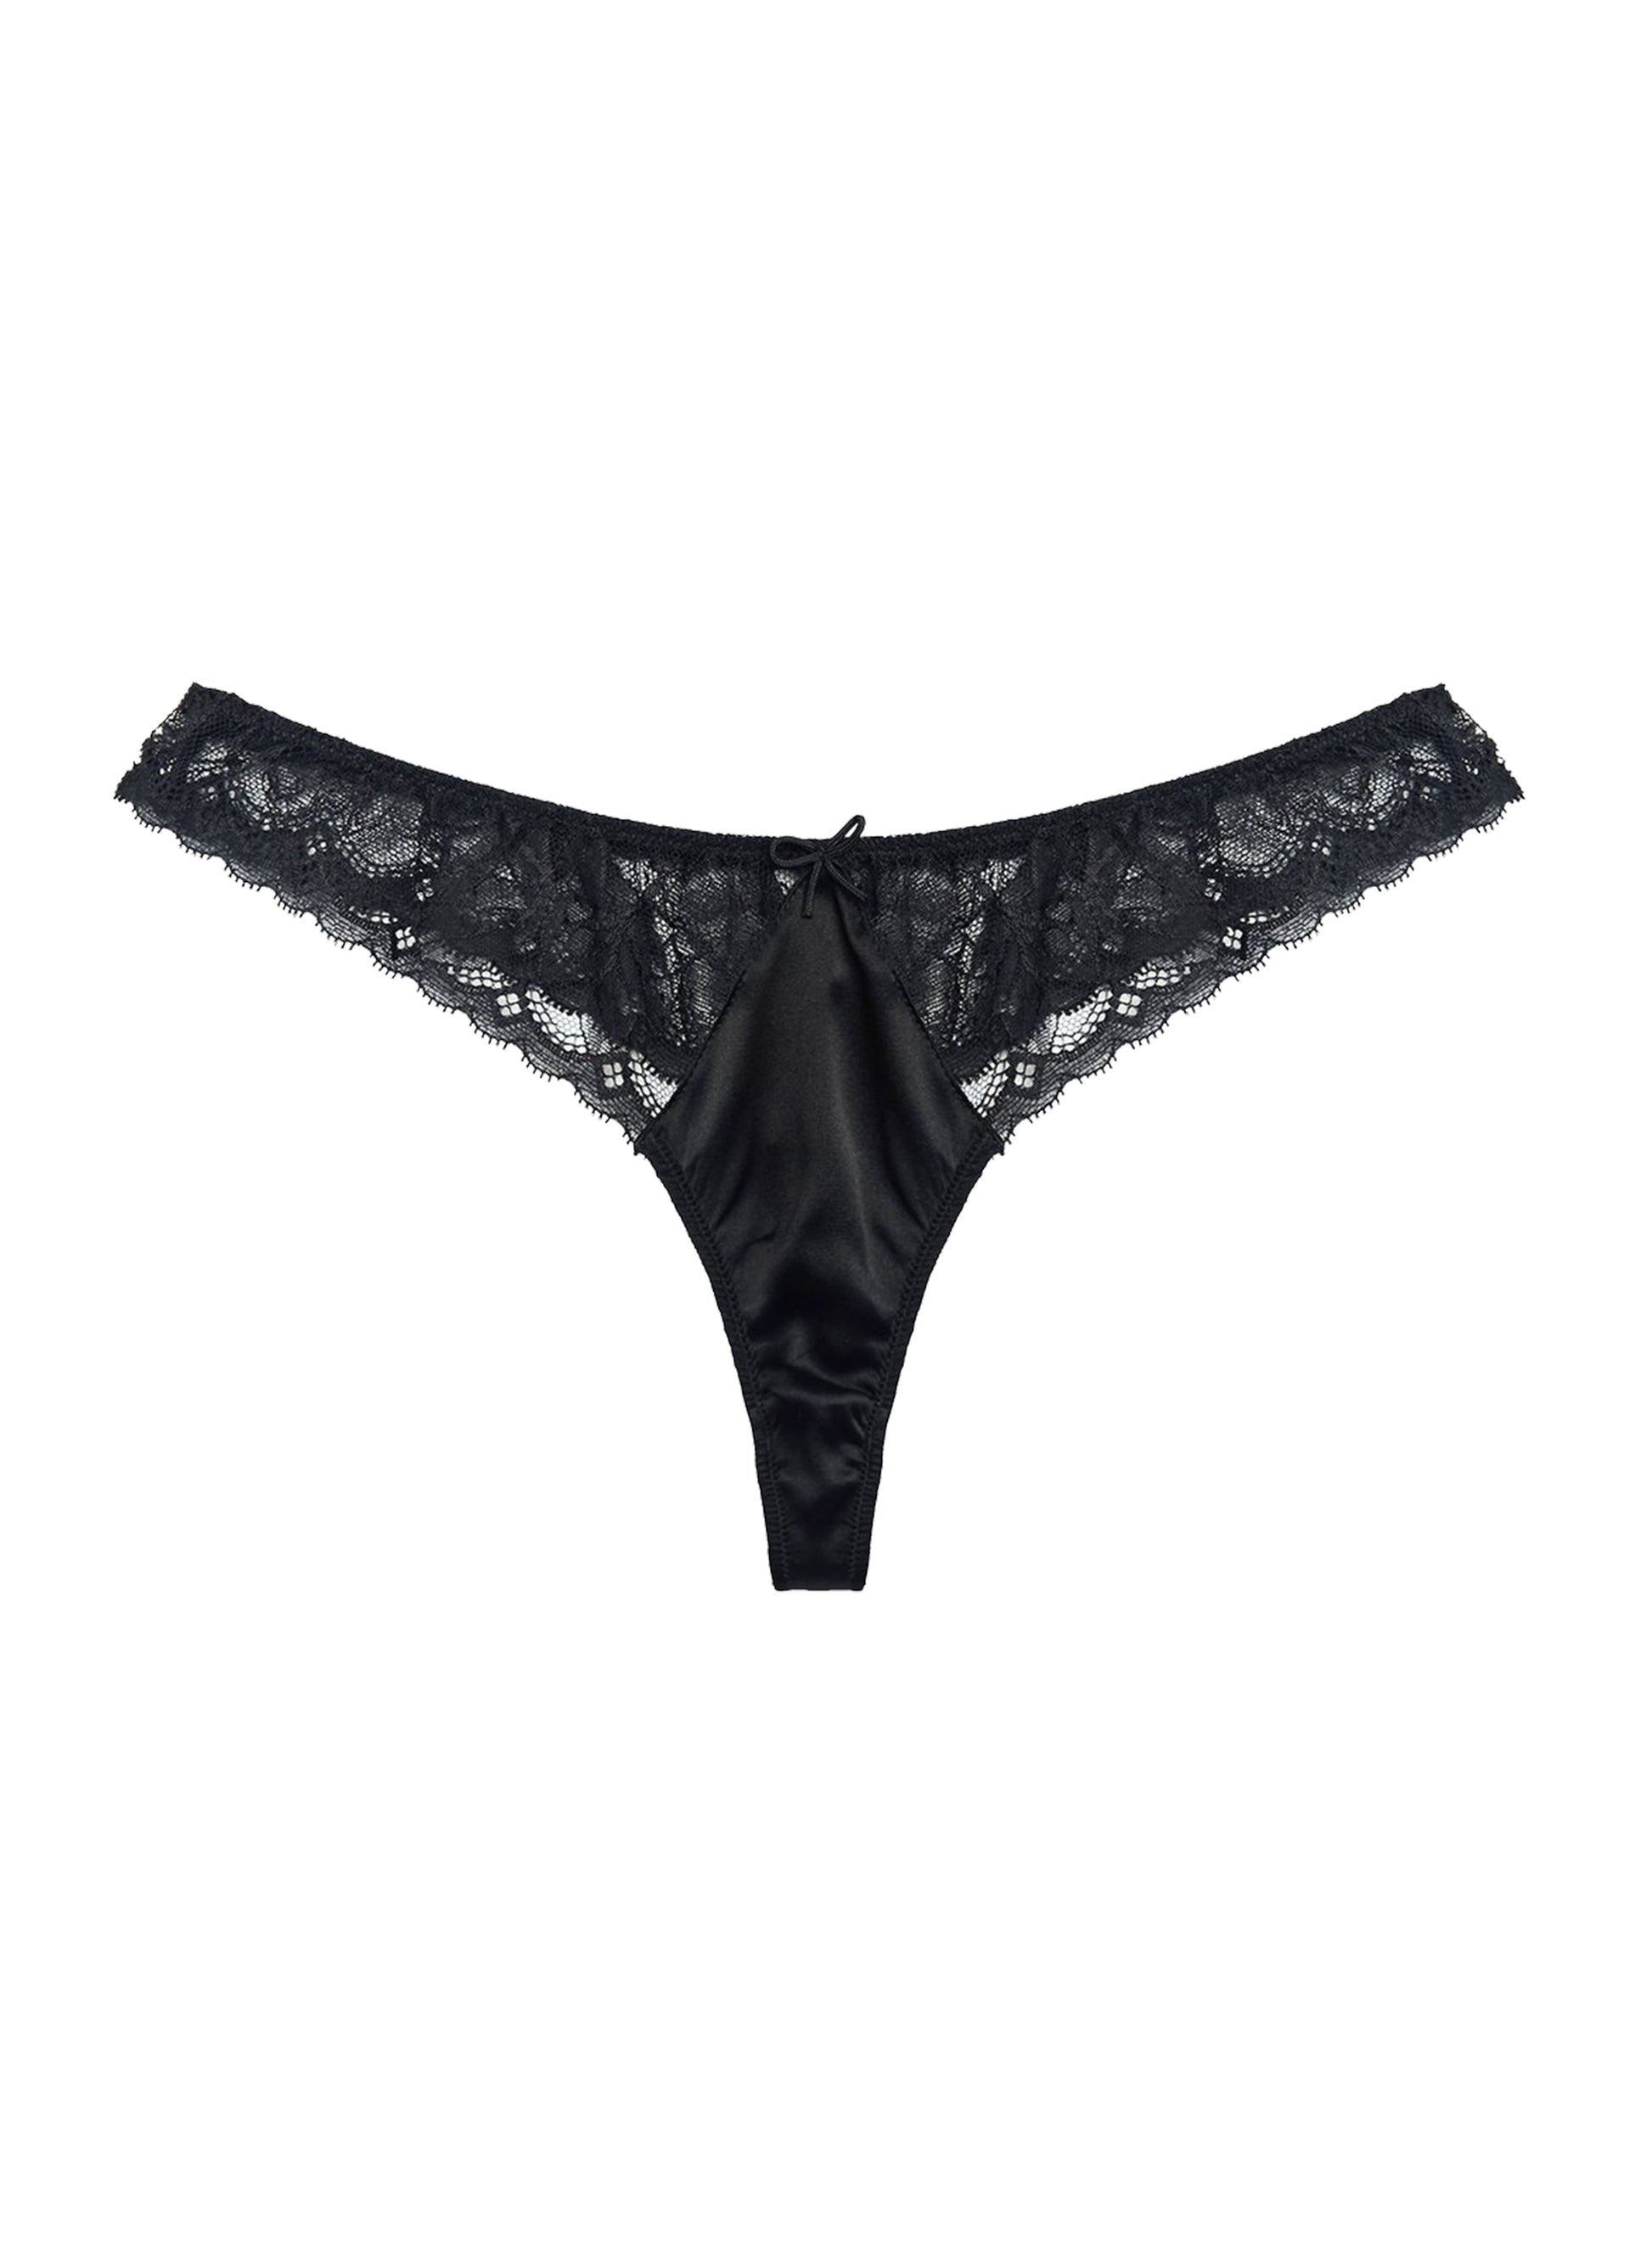 Black lace thong – Boutine LA